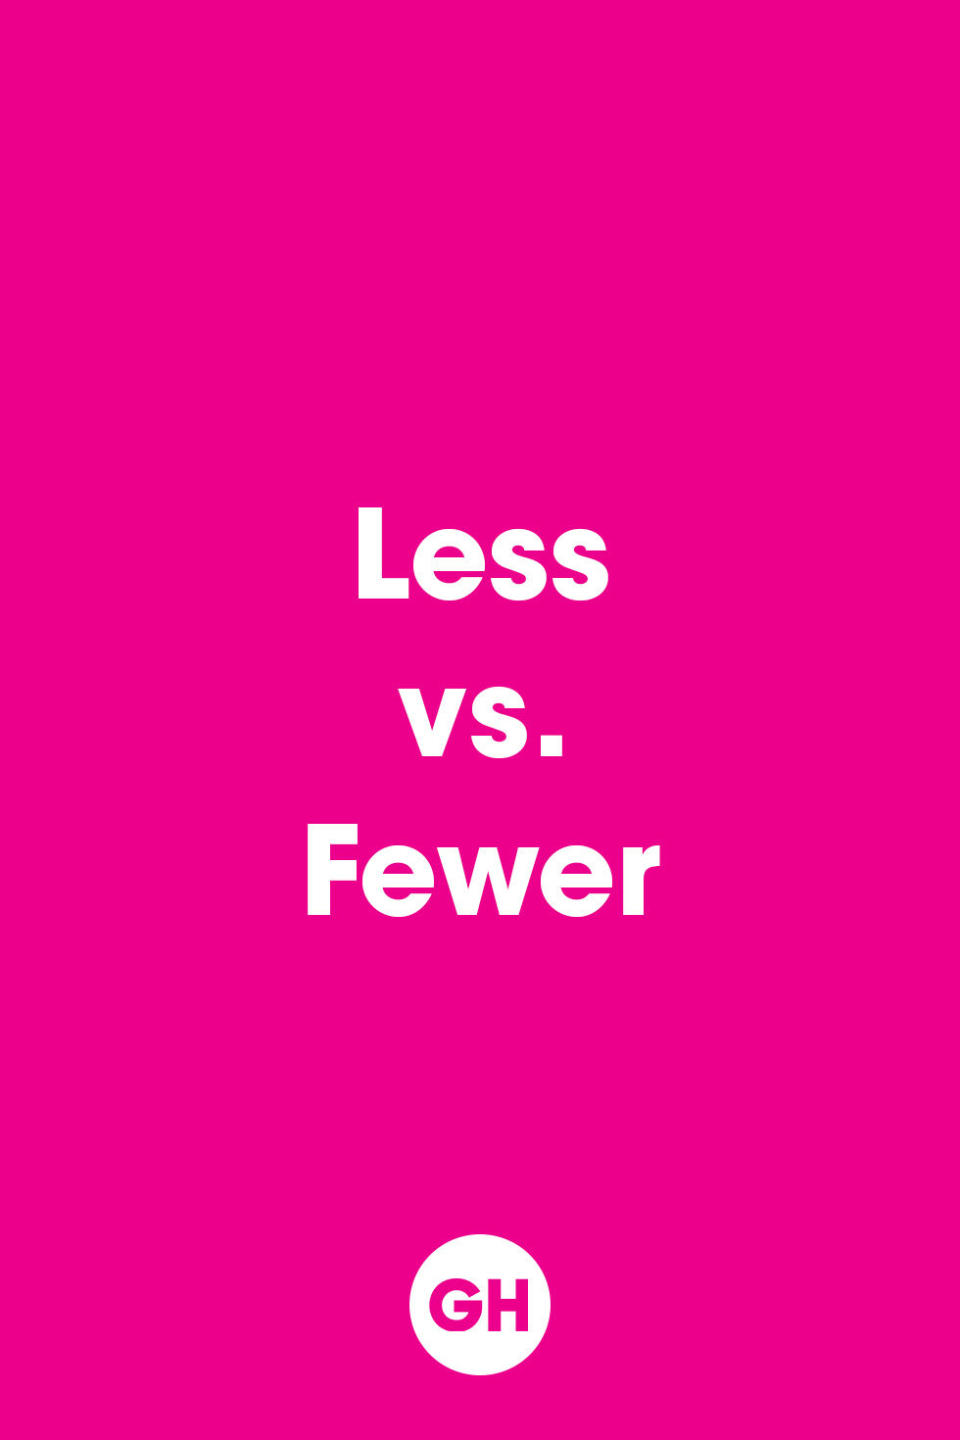 Less vs. Fewer